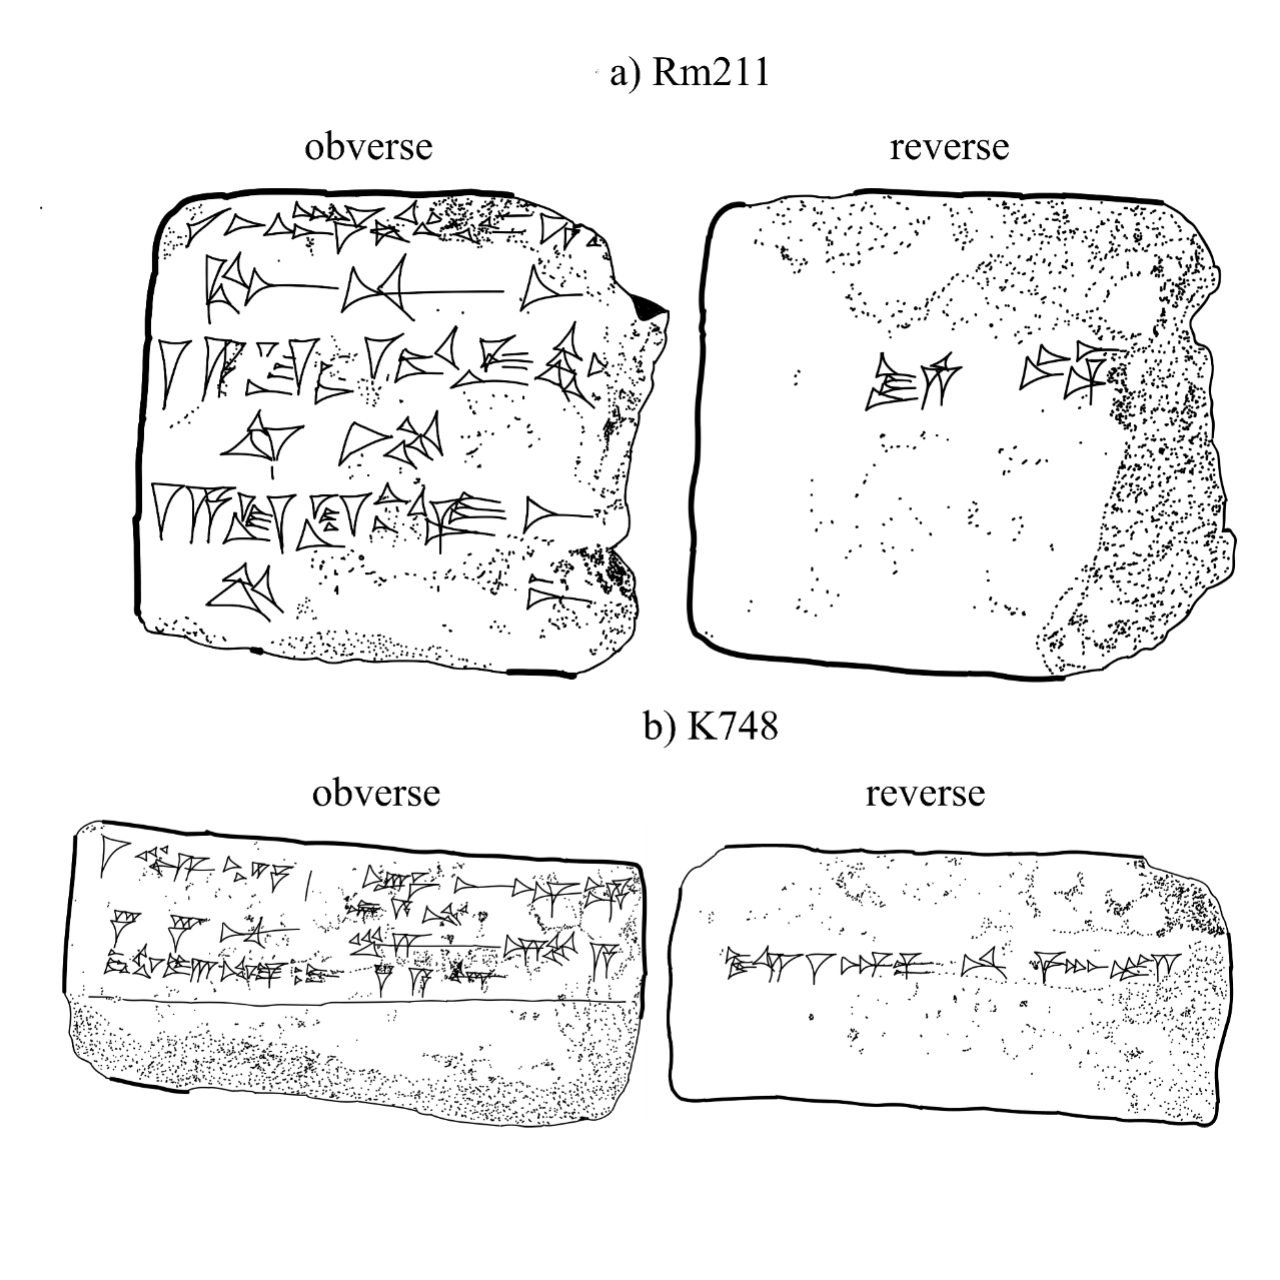 La tempête solaire qui s'est produite il y a 2,700 3 ans a été documentée dans les tablettes assyriennes XNUMX